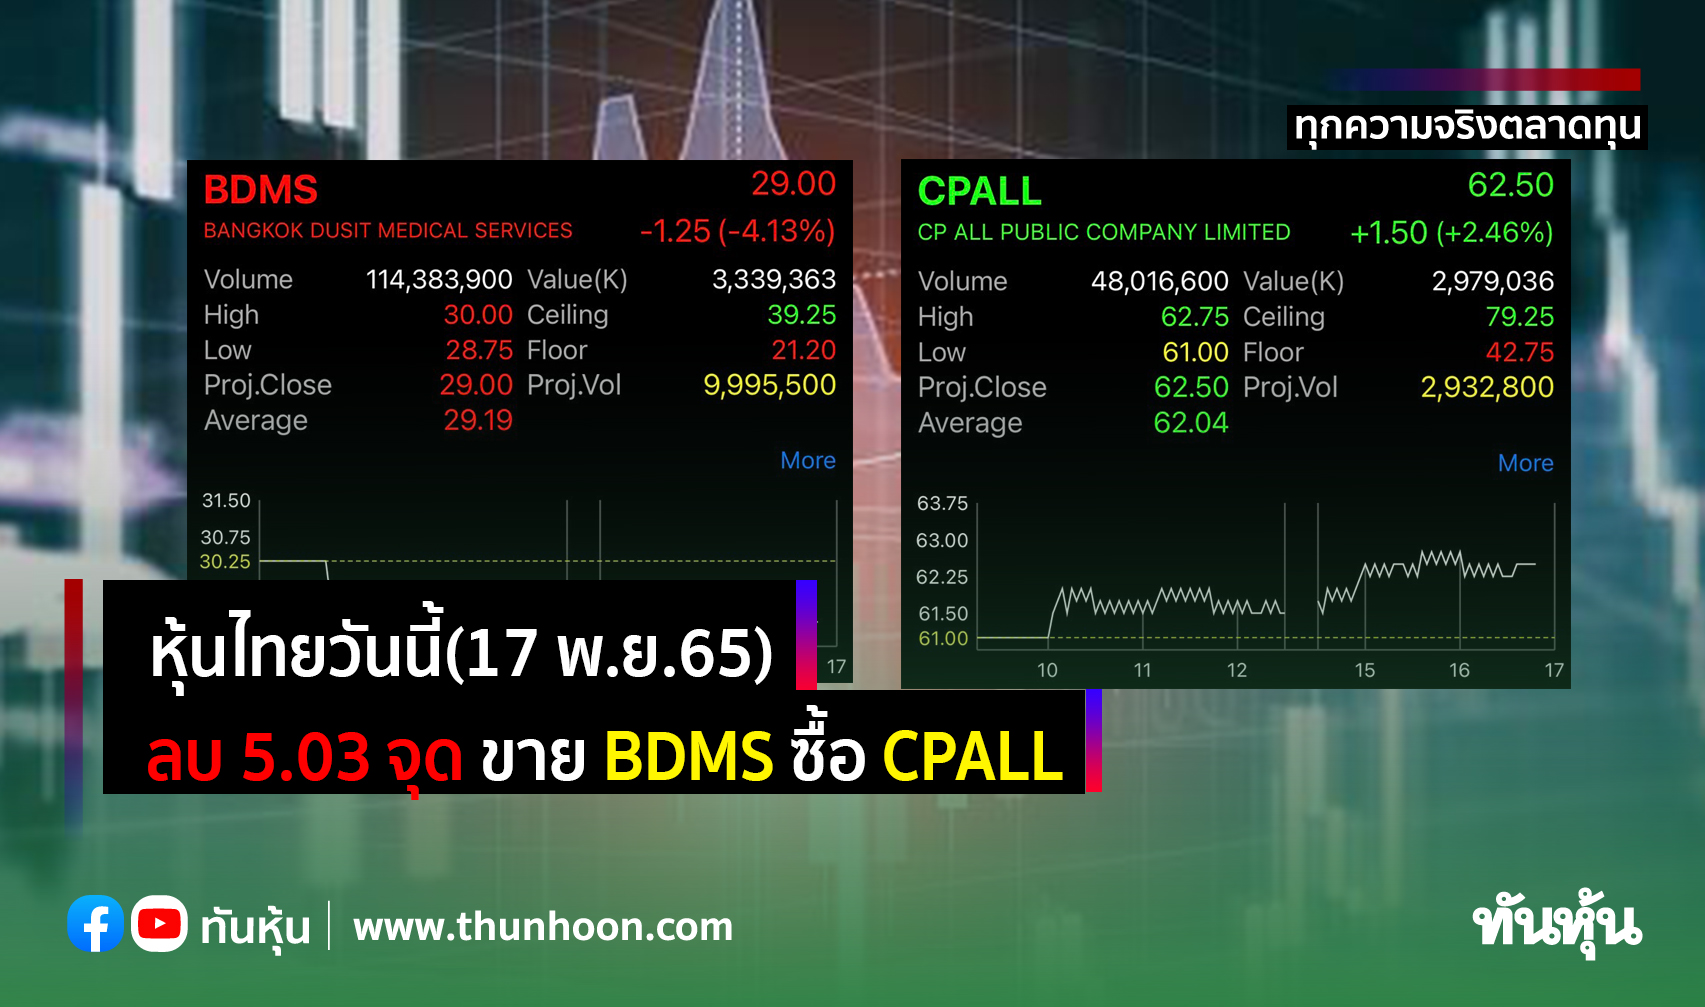 หุ้นไทยวันนี้(17 พ.ย.65) ลบ 5.03 จุด ขาย BDMS ซื้อ CPALL